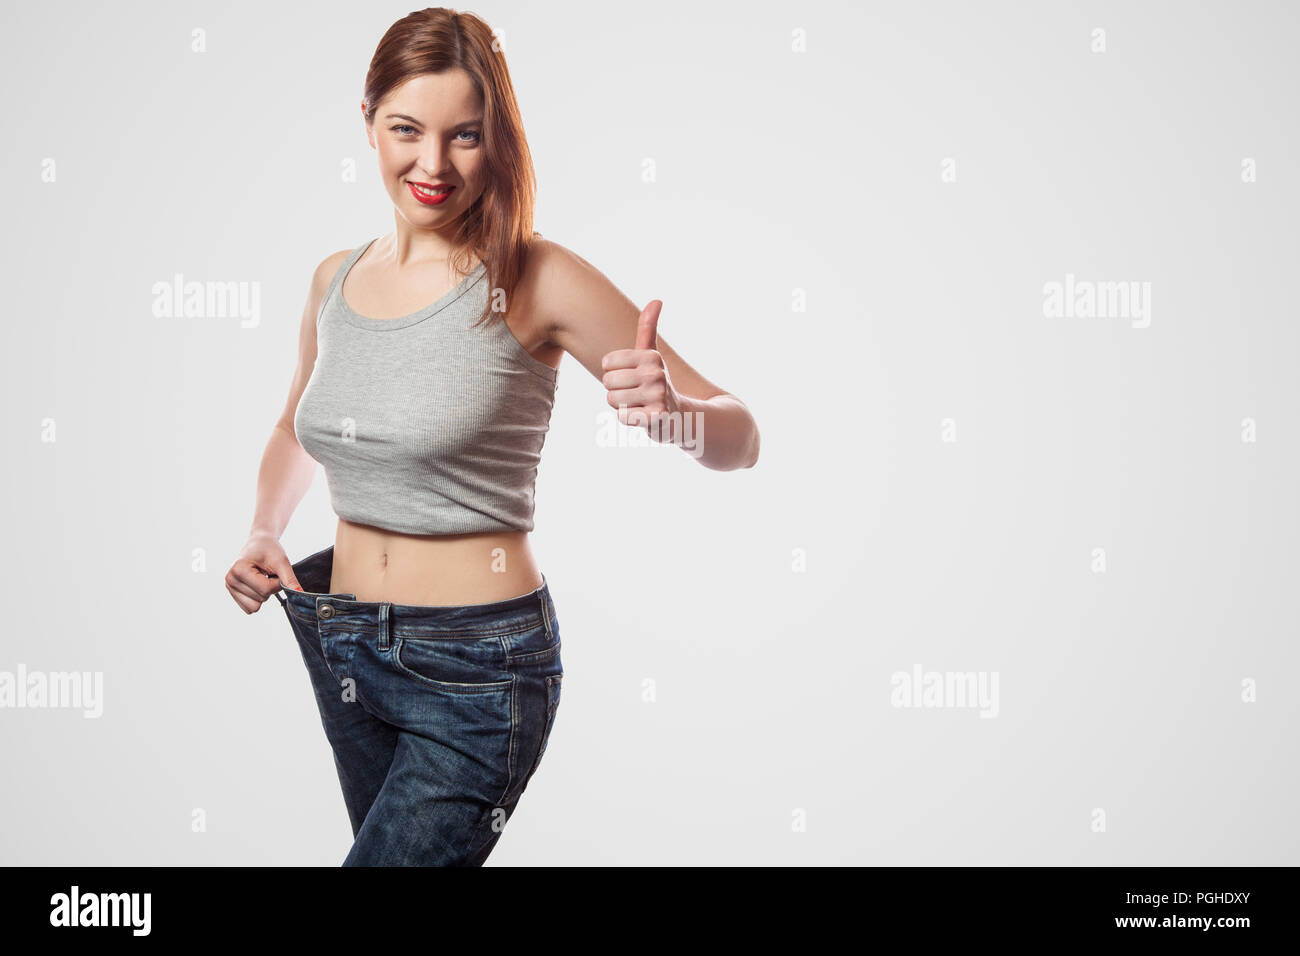 Portrait von glücklich Schöne schlanke Taille der jungen Frau, die in Jeans und grau top zeigen erfolgreiche Gewichtsabnahme, Innen, studio Shot, isoliert Stockfoto